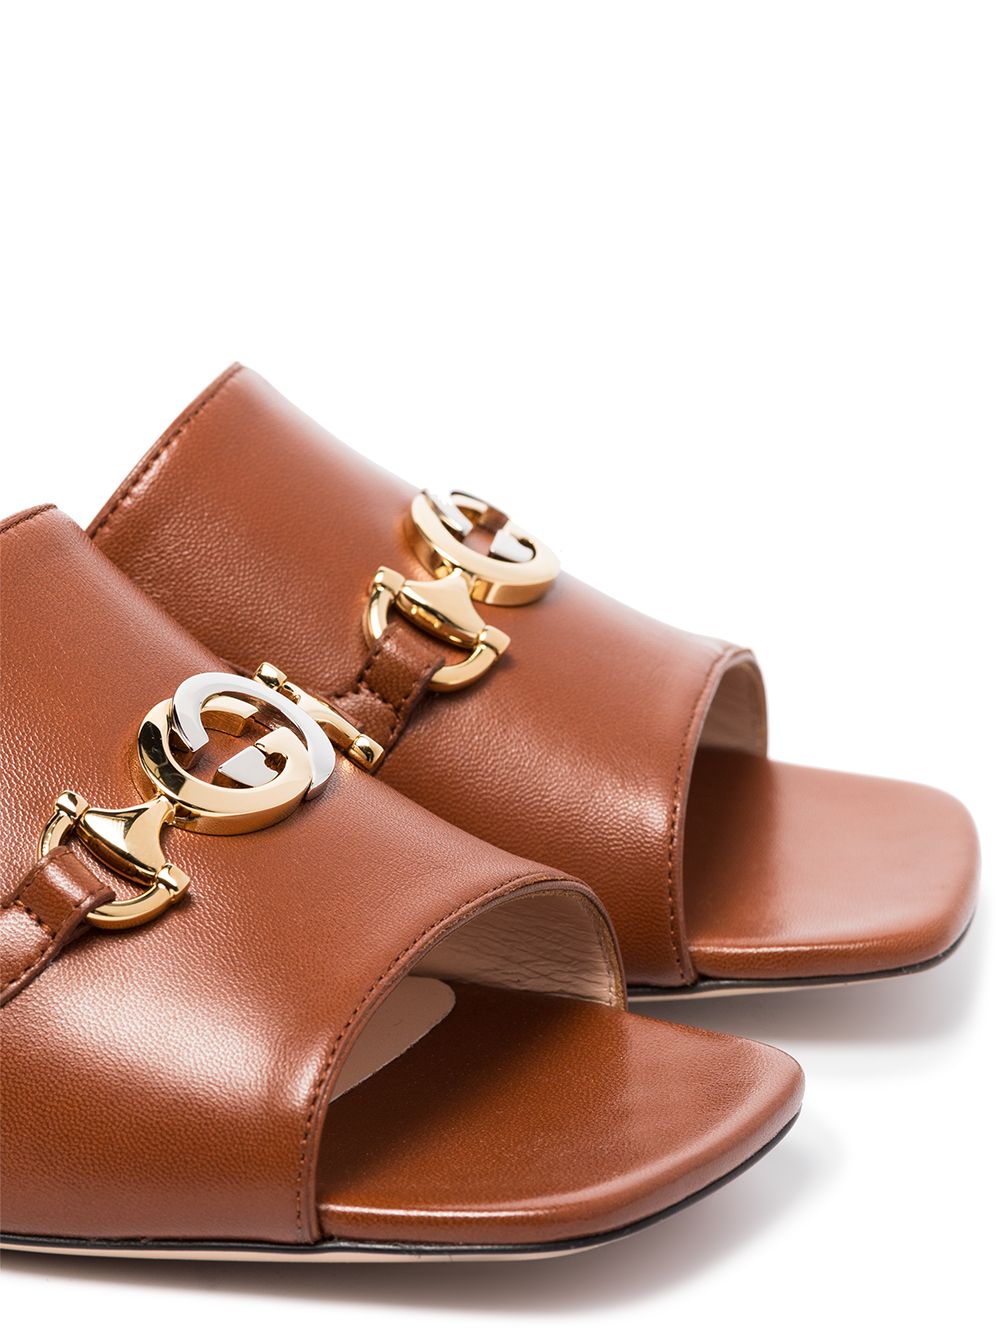 фото Gucci сандалии с пряжками и логотипом